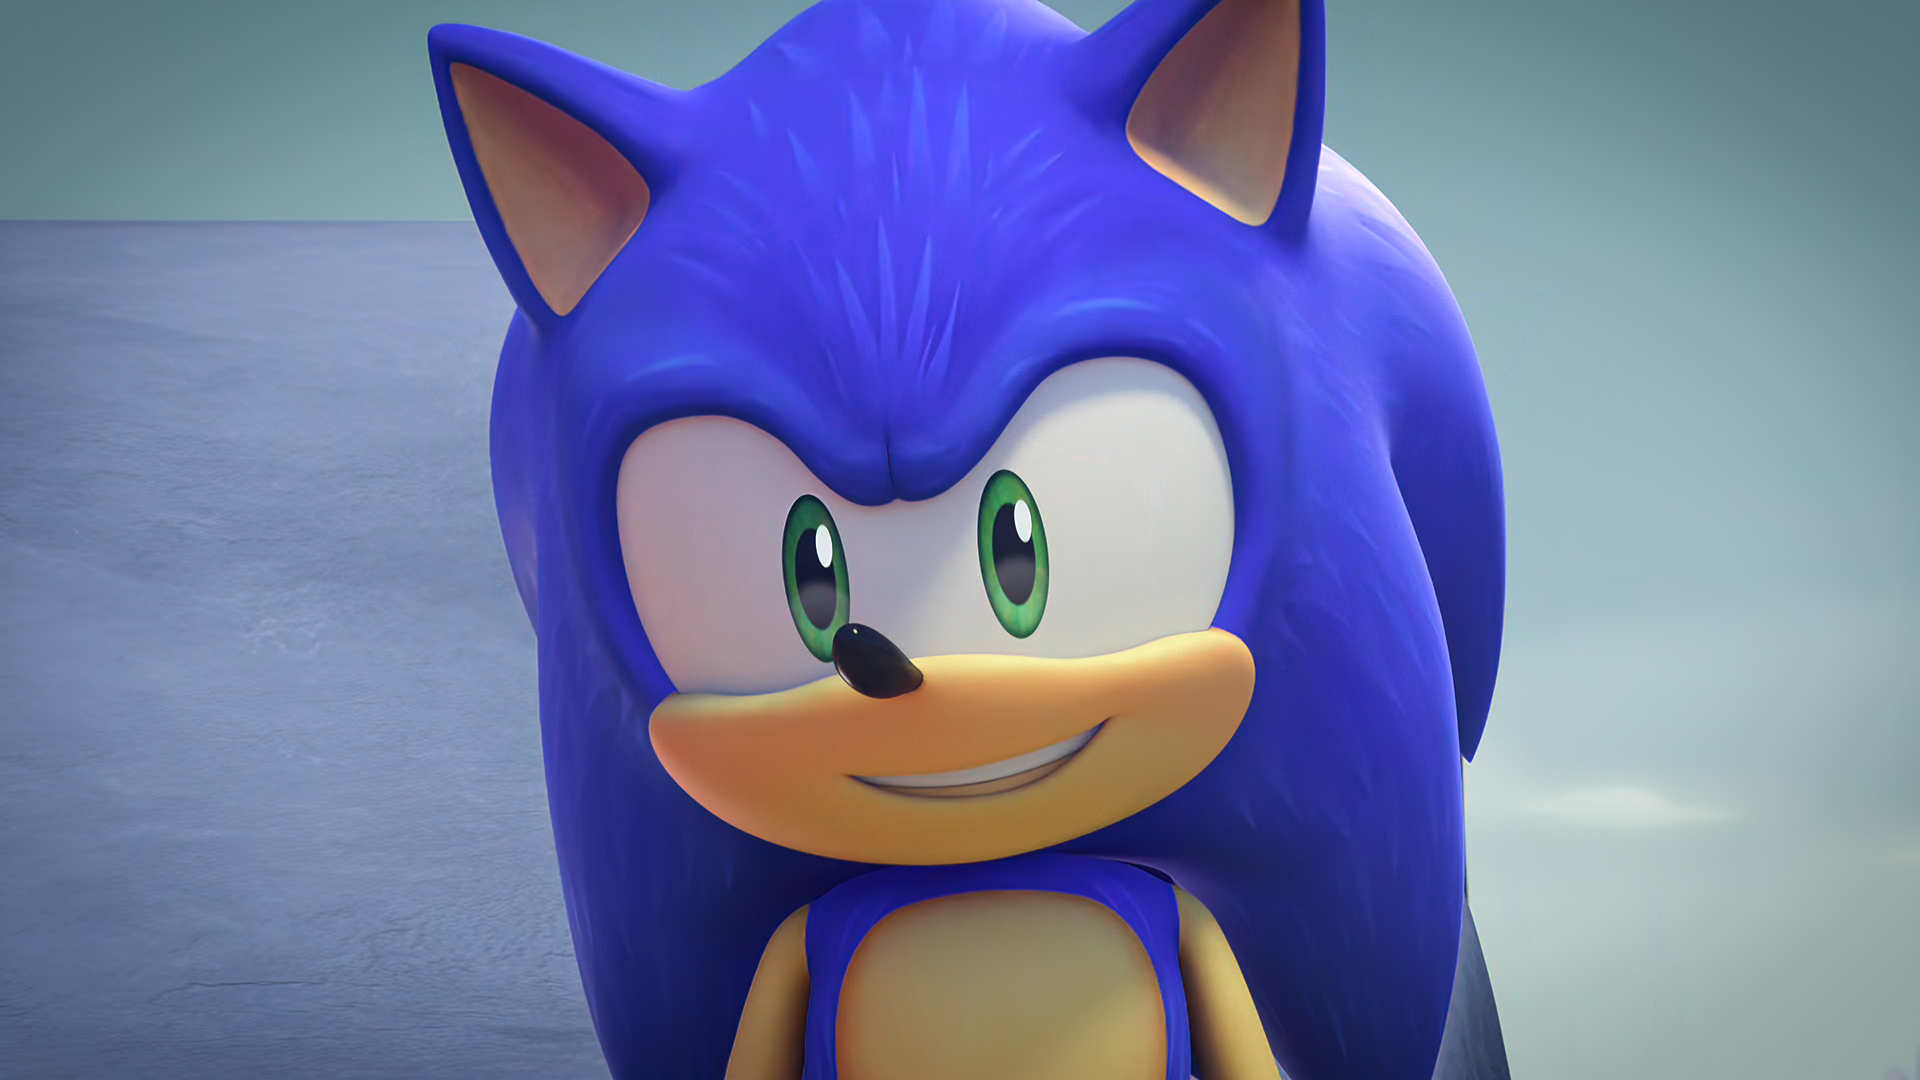 Sonic the Hedgehog 2020-Sonic 15 by GiuseppeDiRosso on DeviantArt